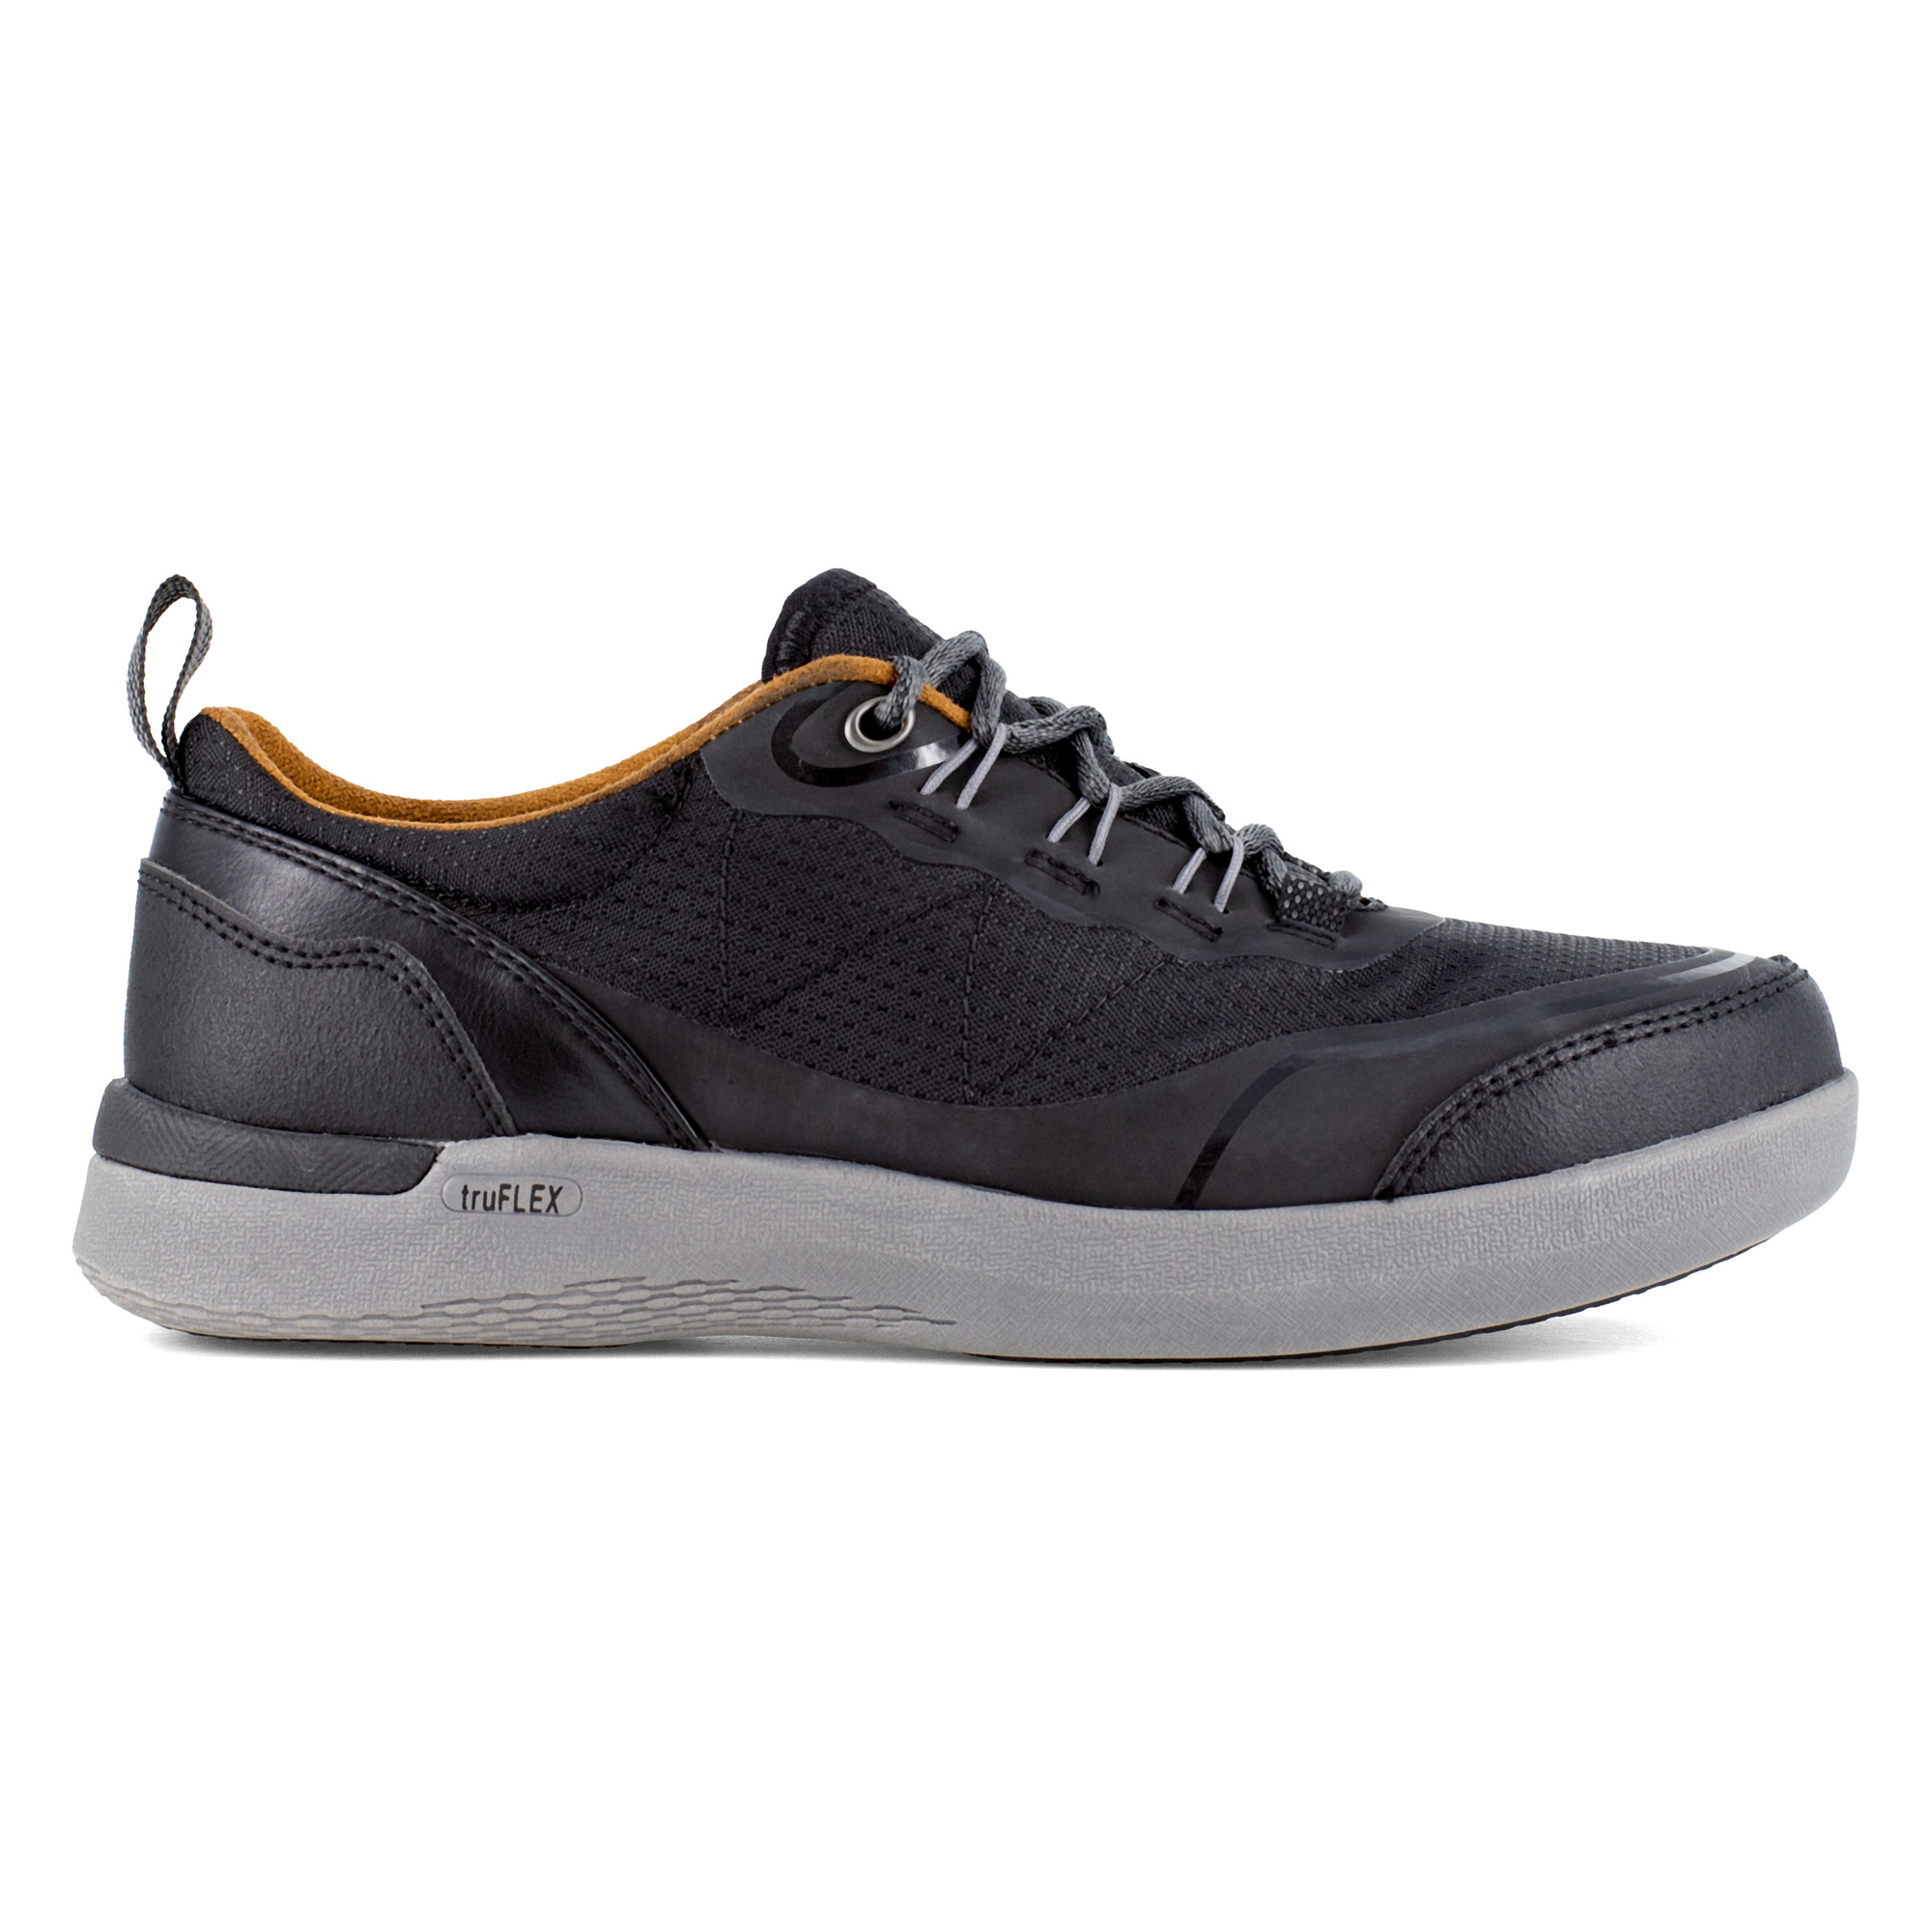 Rockport Works, Work Sneaker, Size 8, Width Medium, Color Black, Model RK687